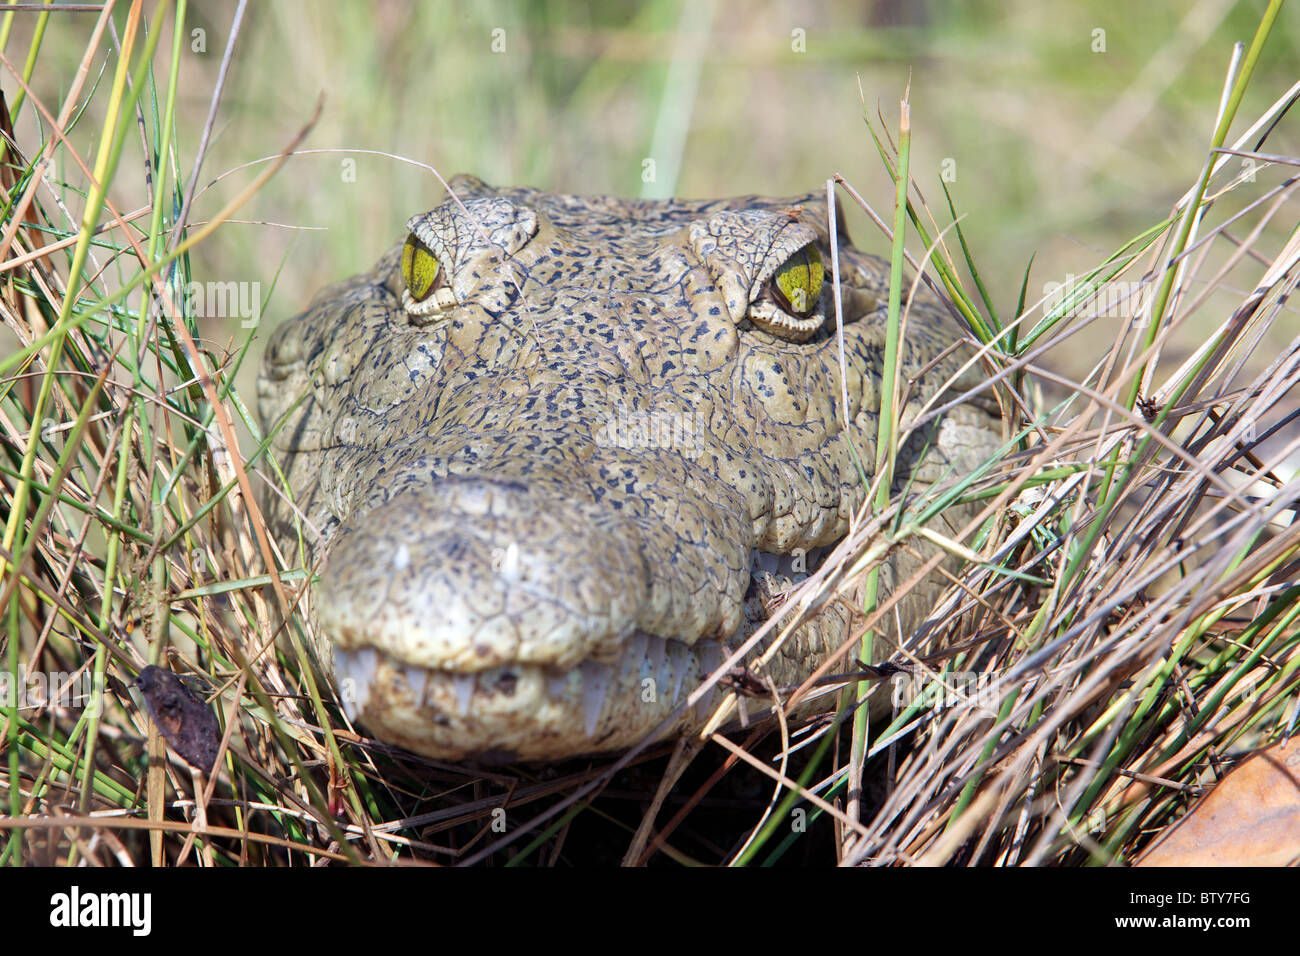 Coccodrillo DEL NILO ( Crocodylus niloticus ) Saadani National Park in Tanzania Foto Stock